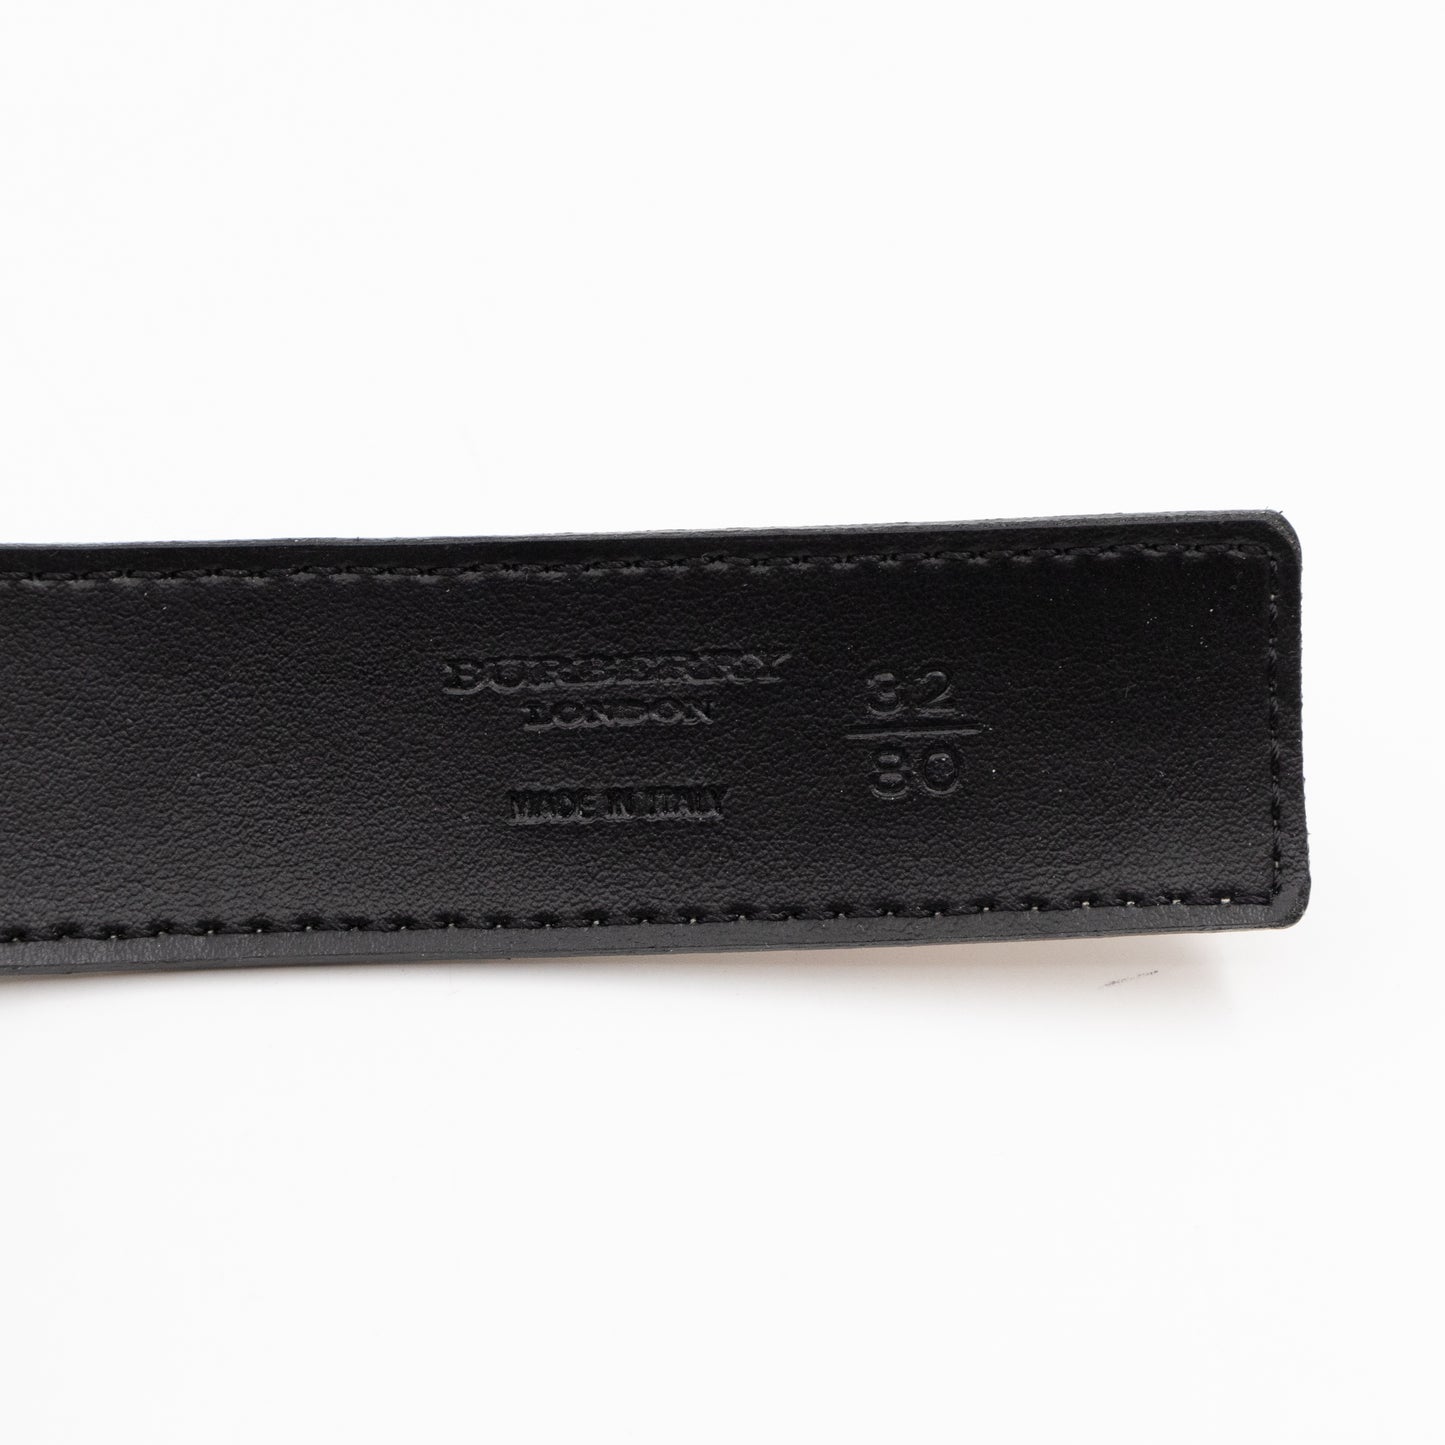 Vintage Slim Belt Nova Check Black Leather 80/32